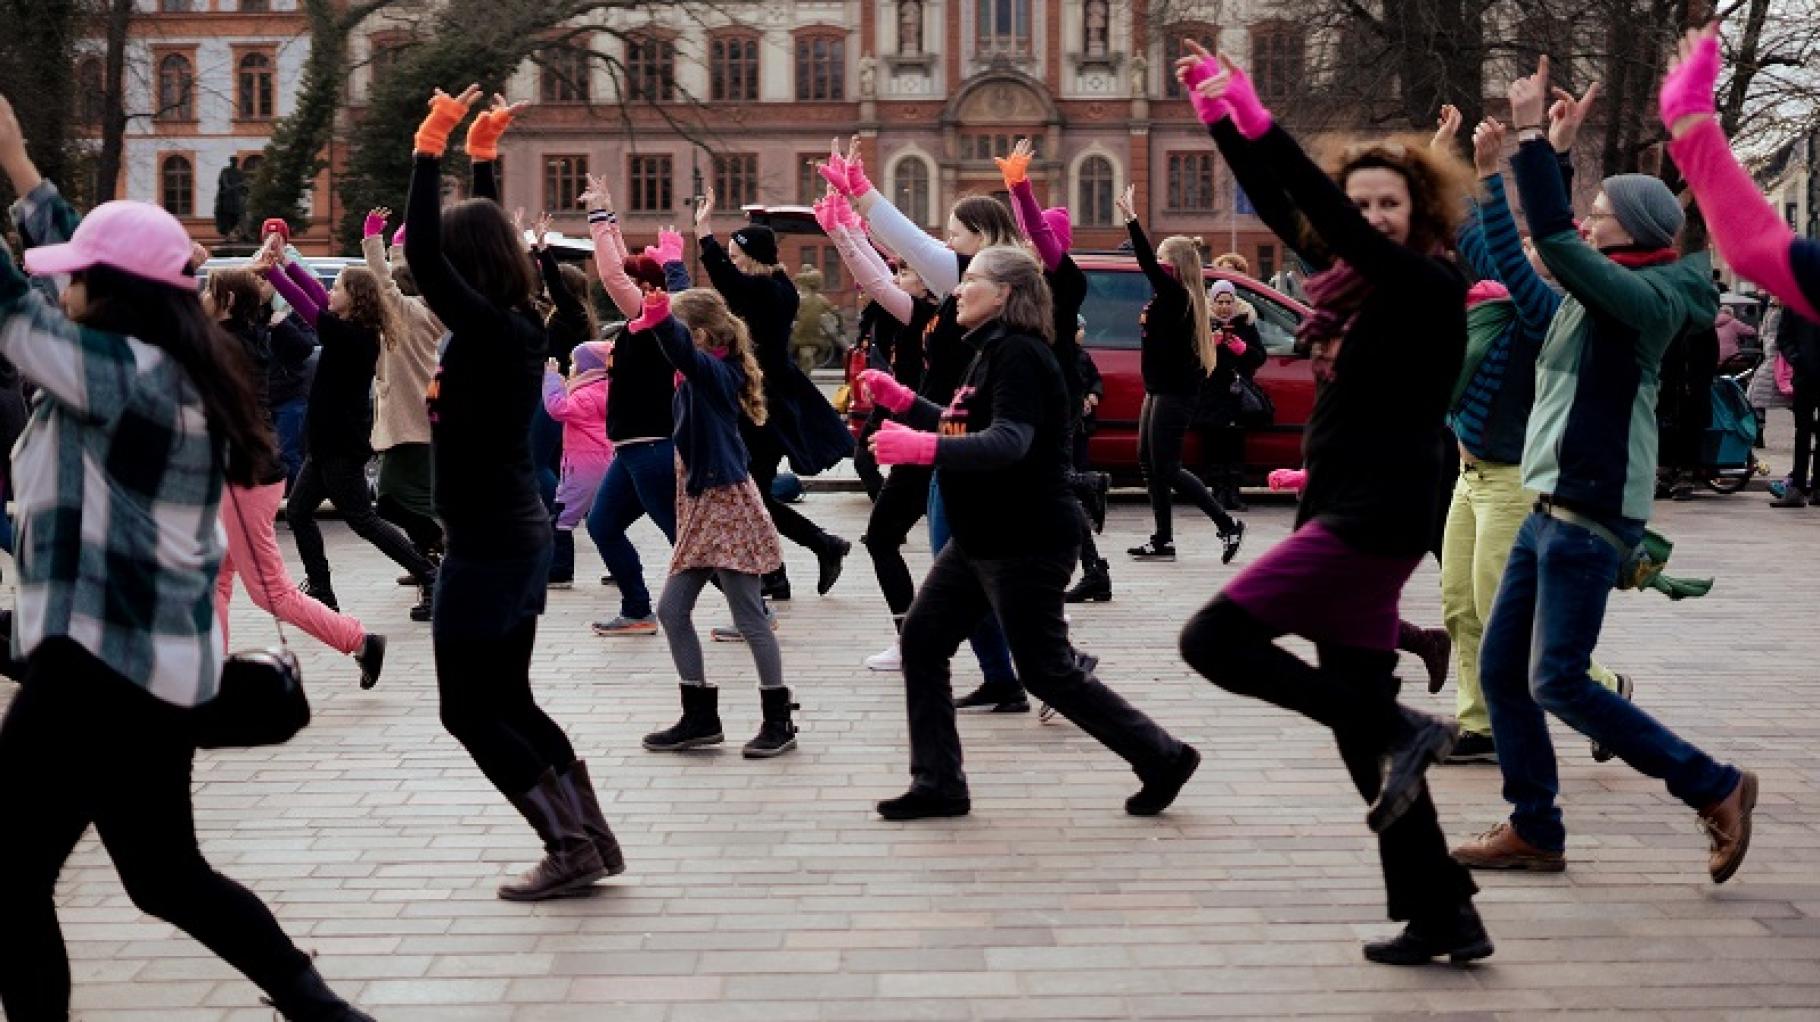 One Billion Rising – Tanzprotest gegen Gewalt in Rostock, Neubrandenburg, Wismar und Schwerin